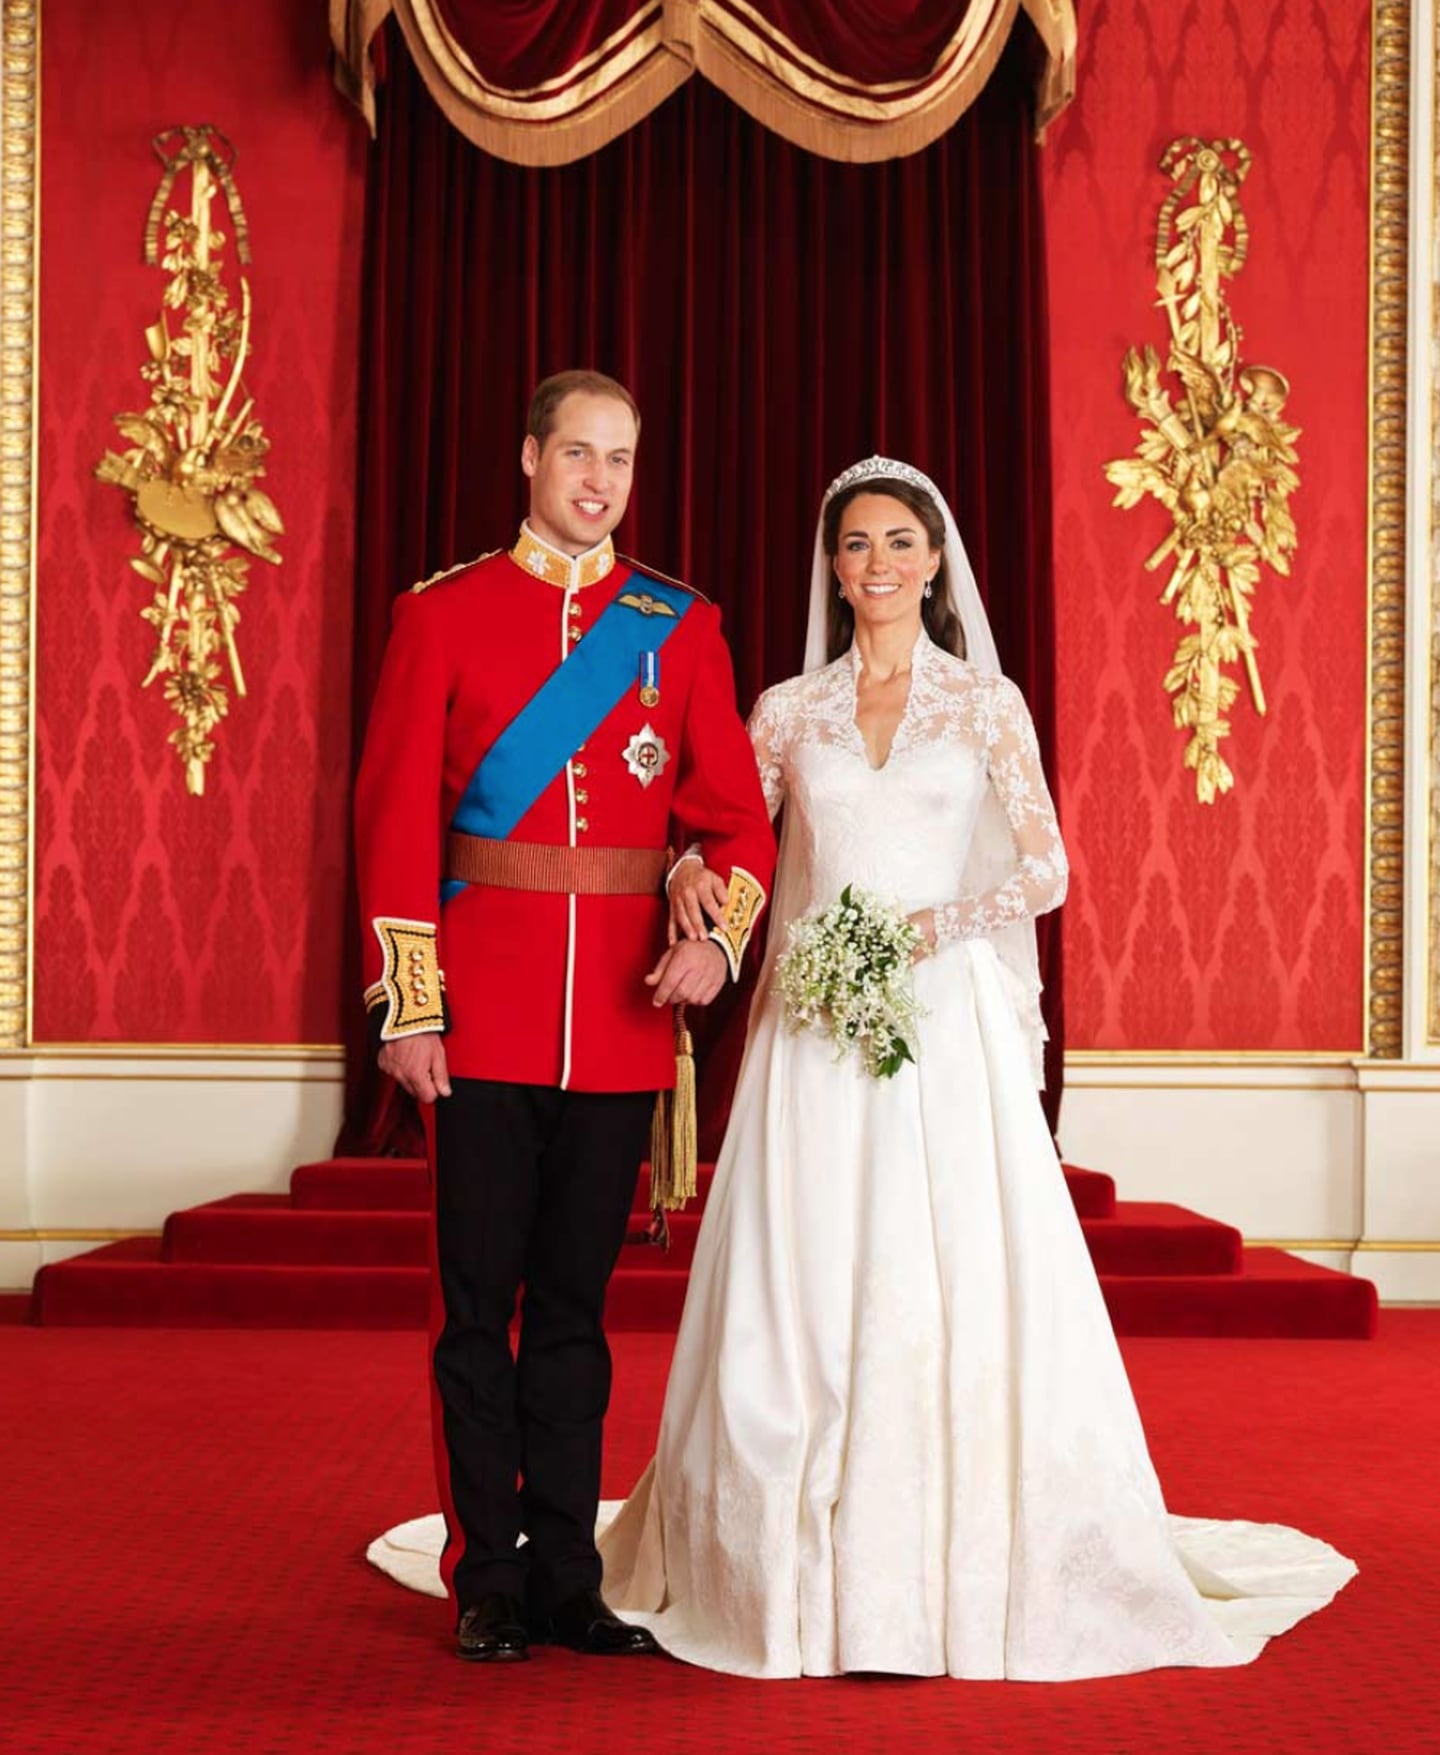 La boda de ensueño del príncipe William y Kate Middleton